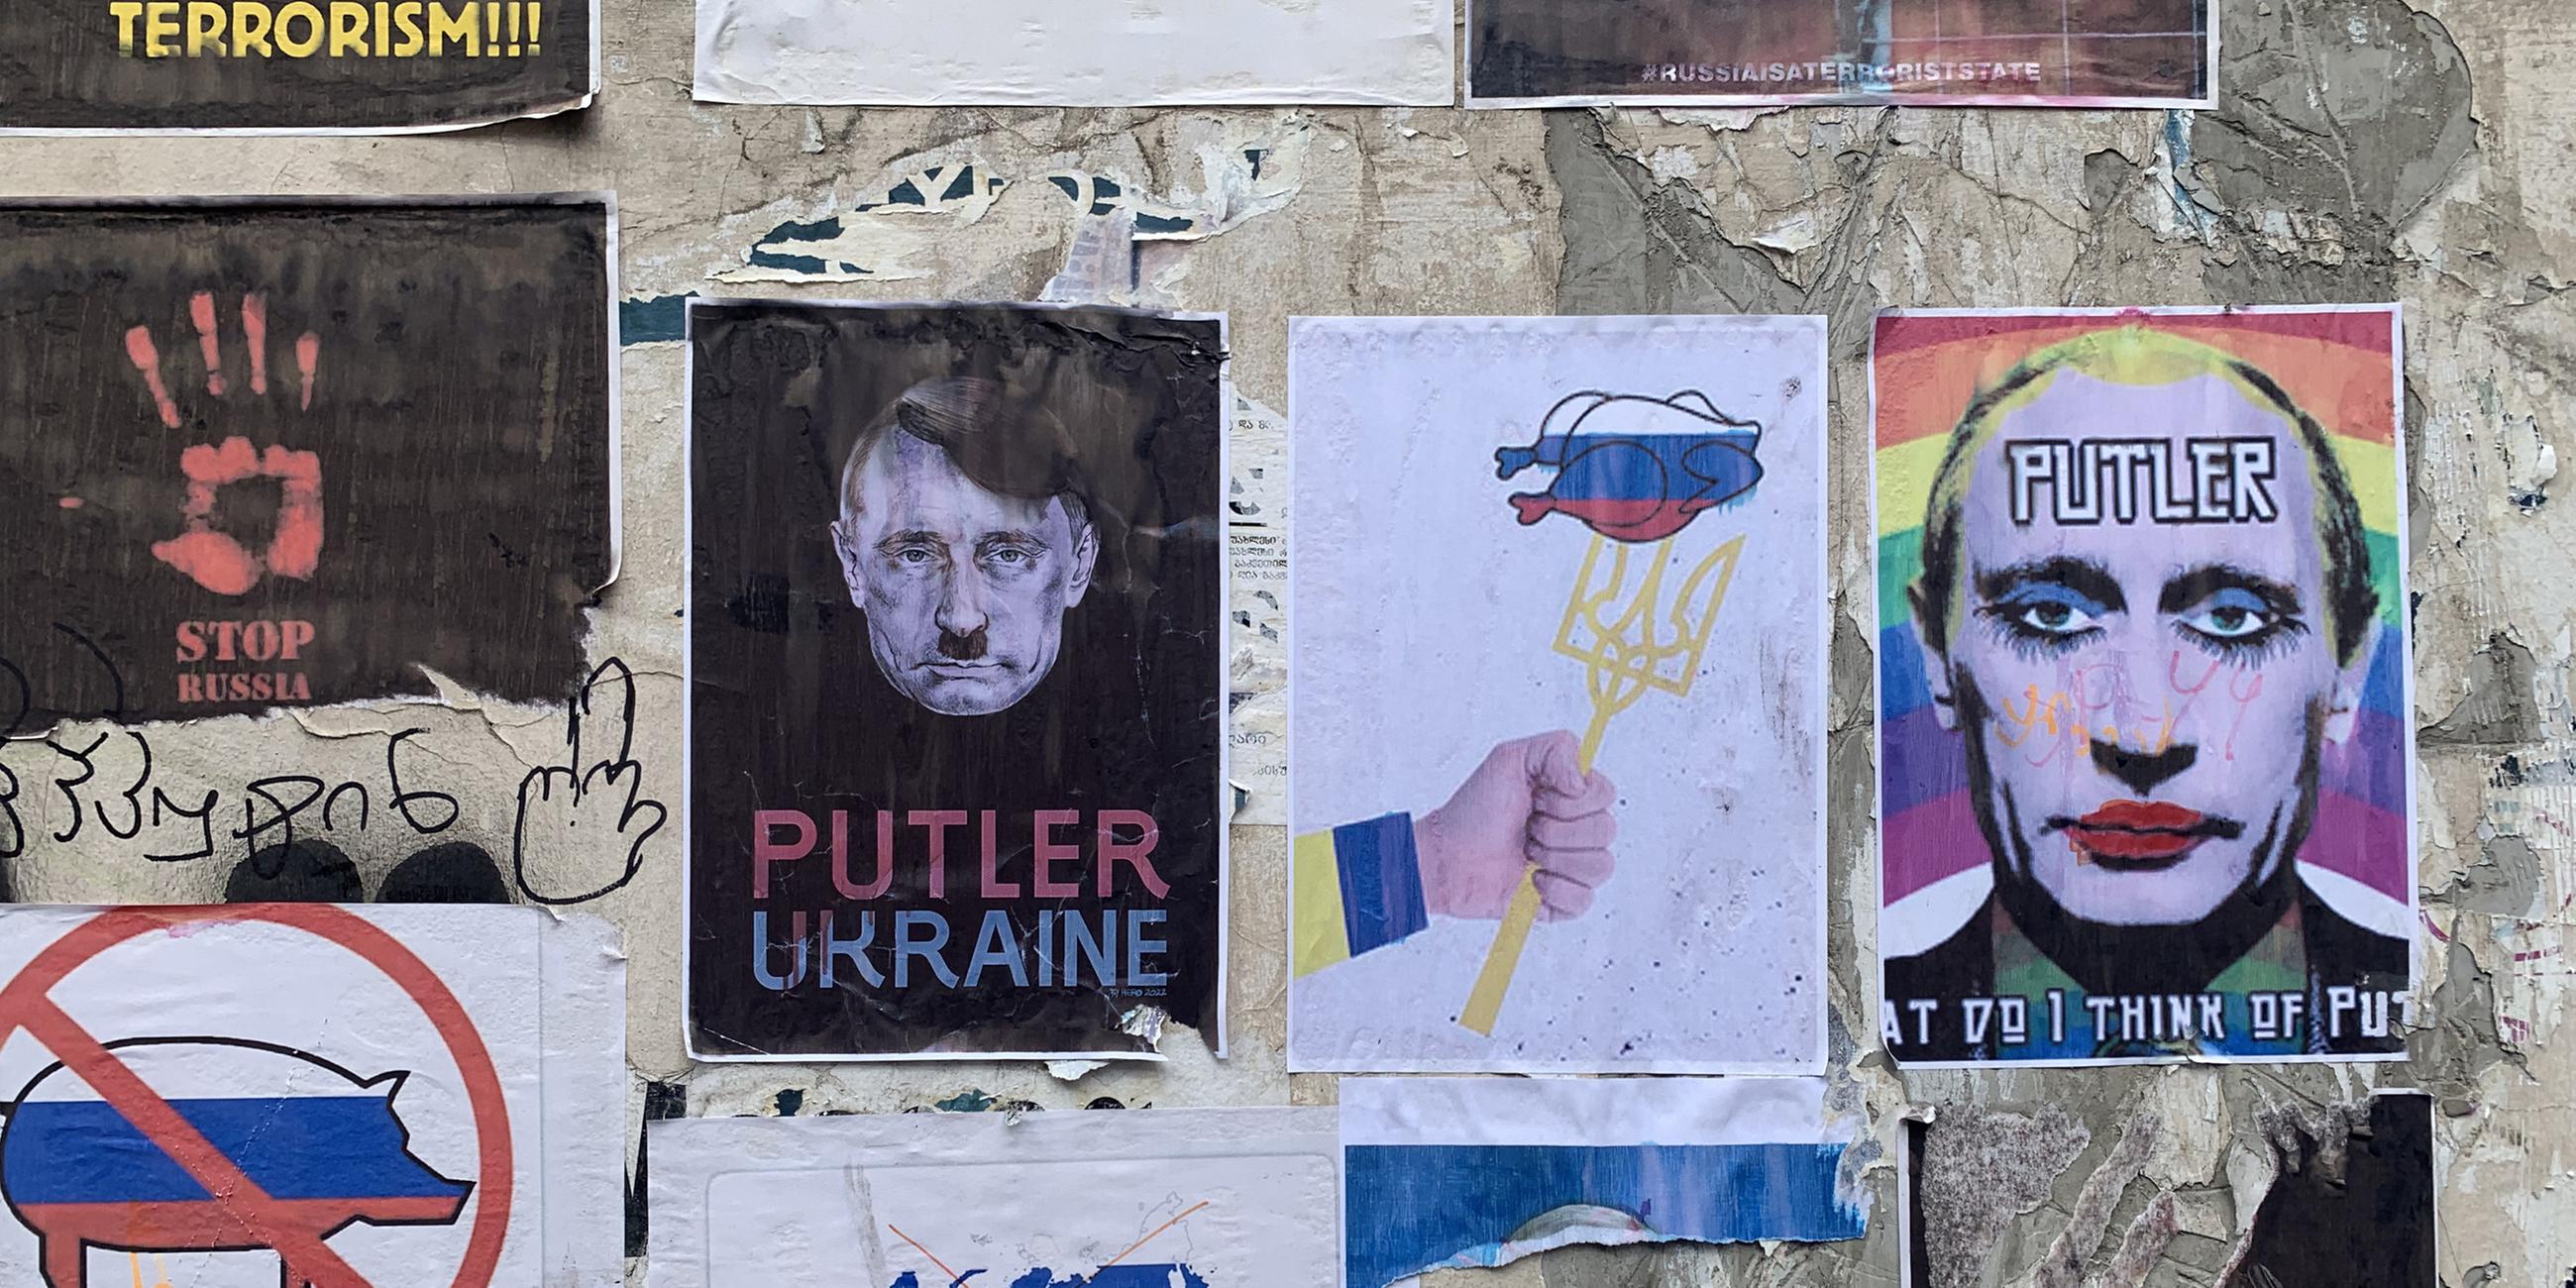 Protestplakate zu "Russische Flüchtlinge in Georgien unterwünscht"